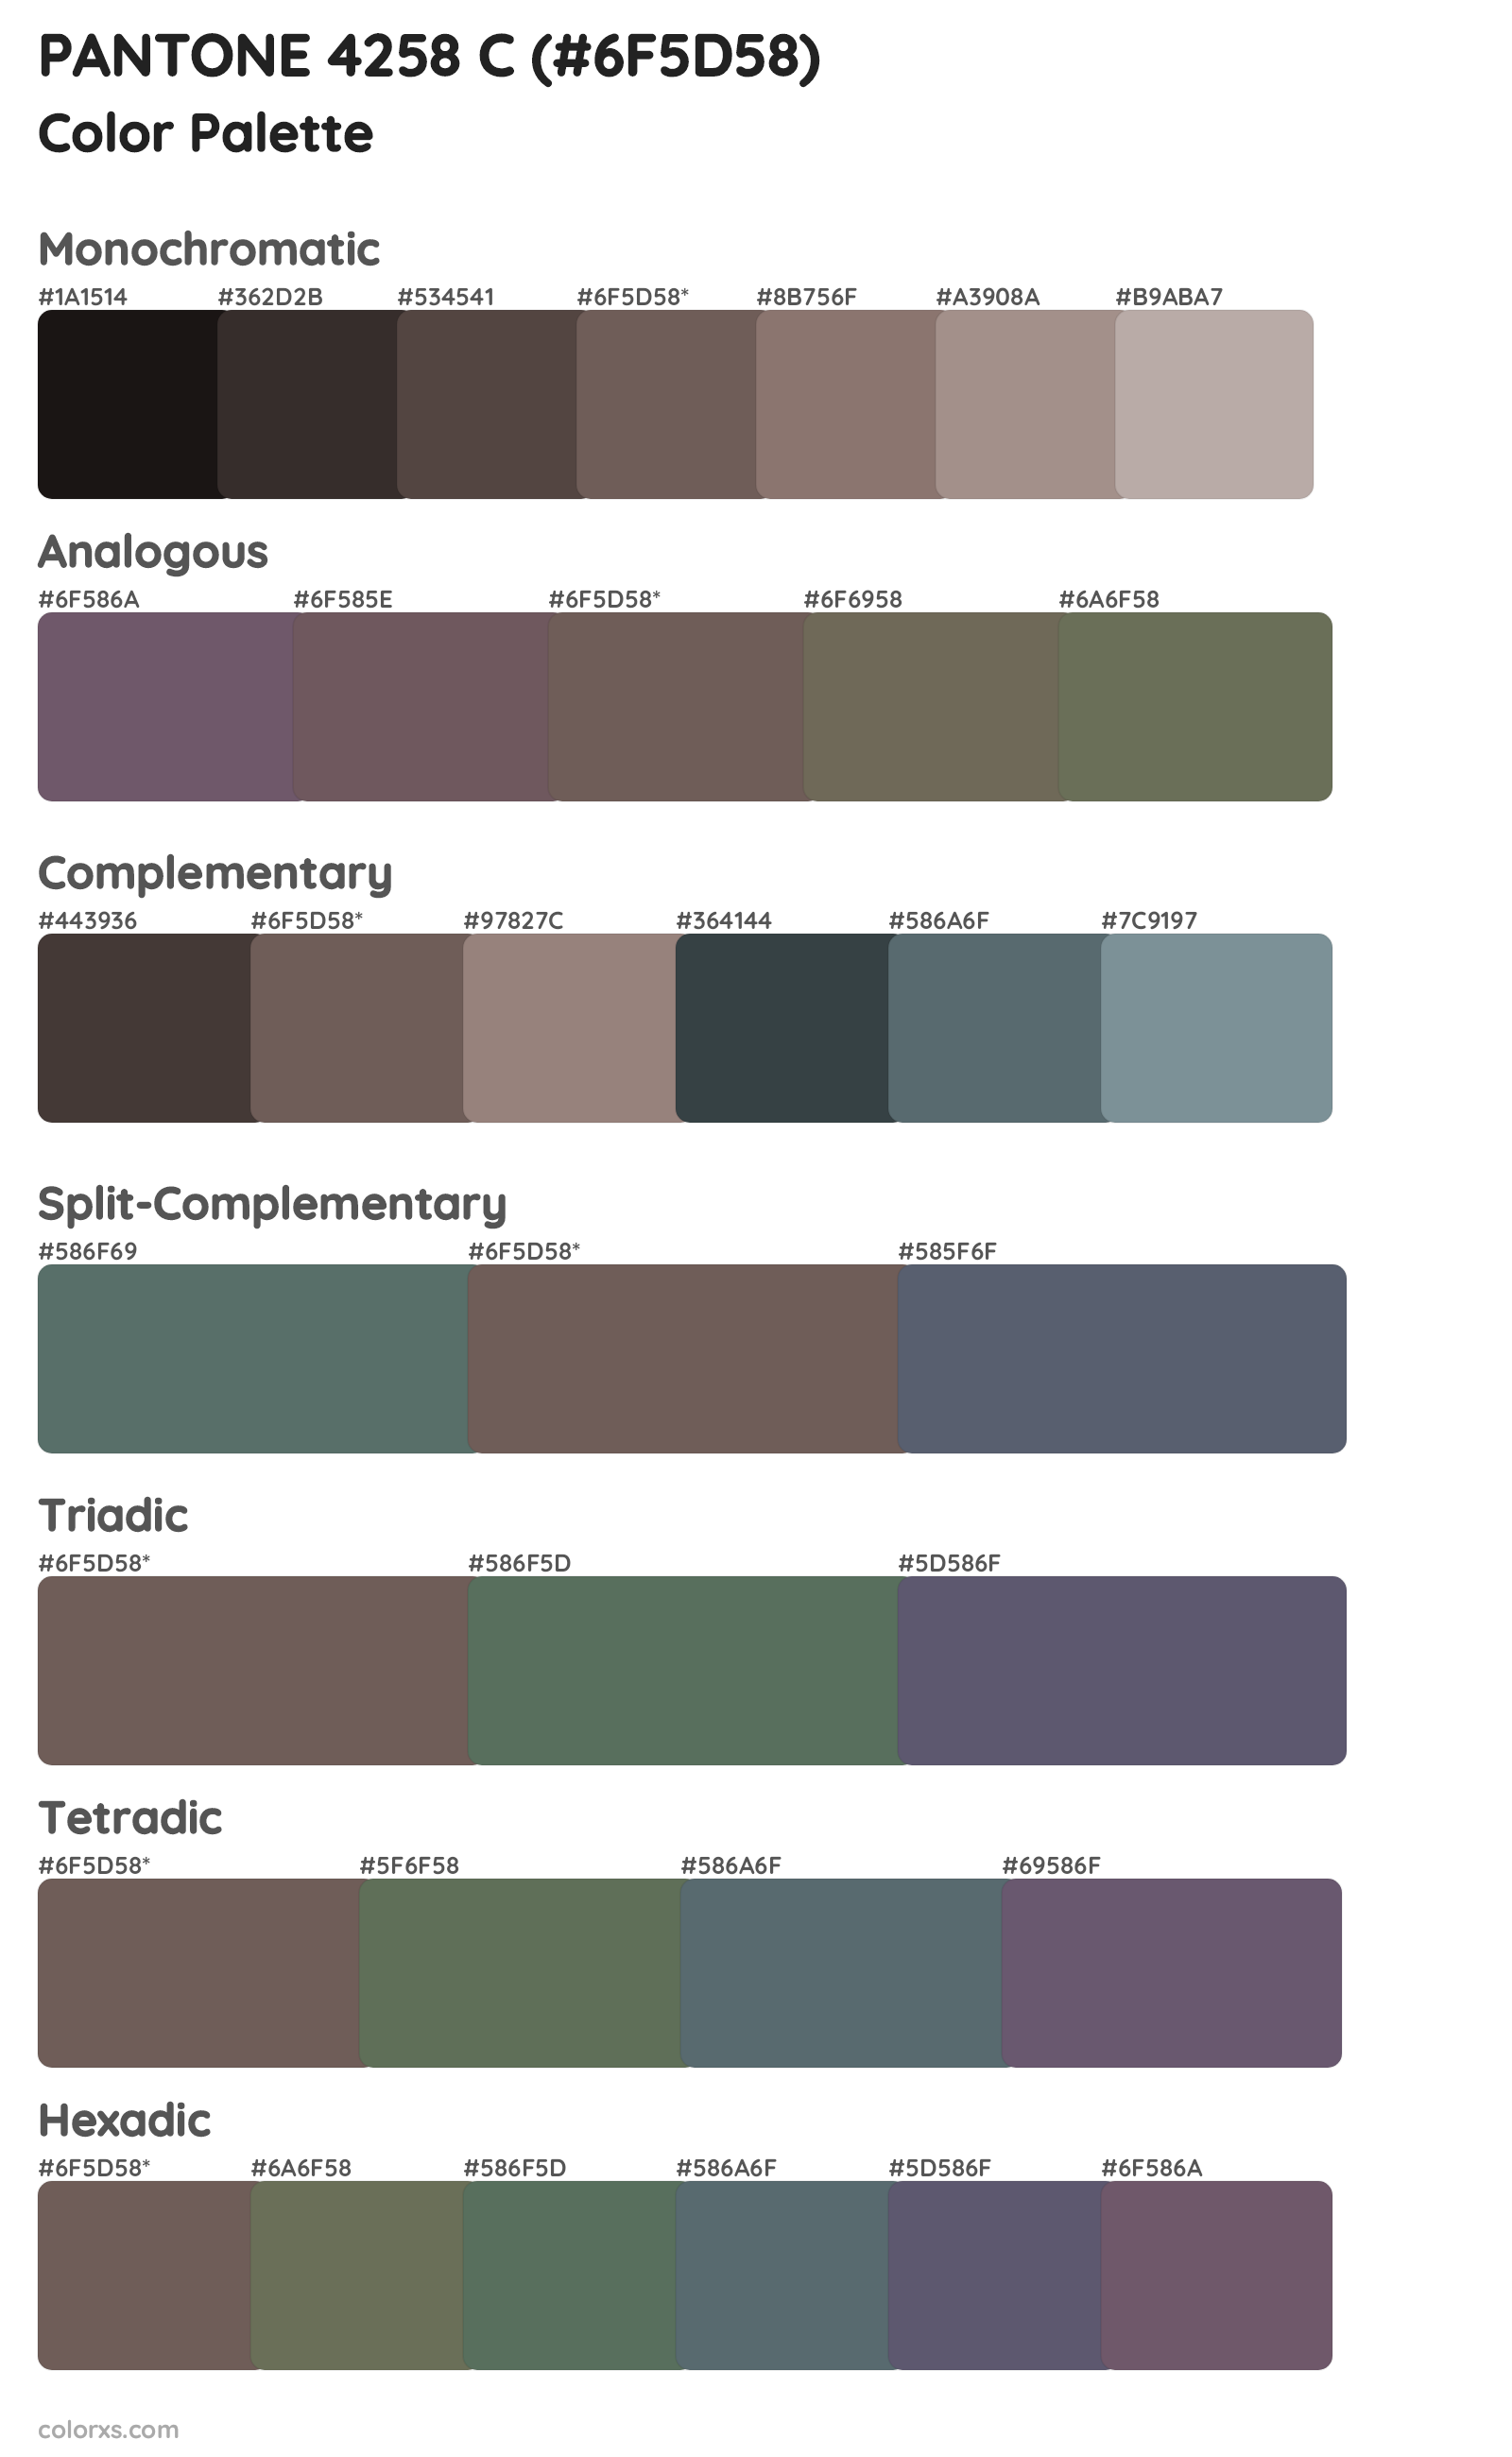 PANTONE 4258 C Color Scheme Palettes